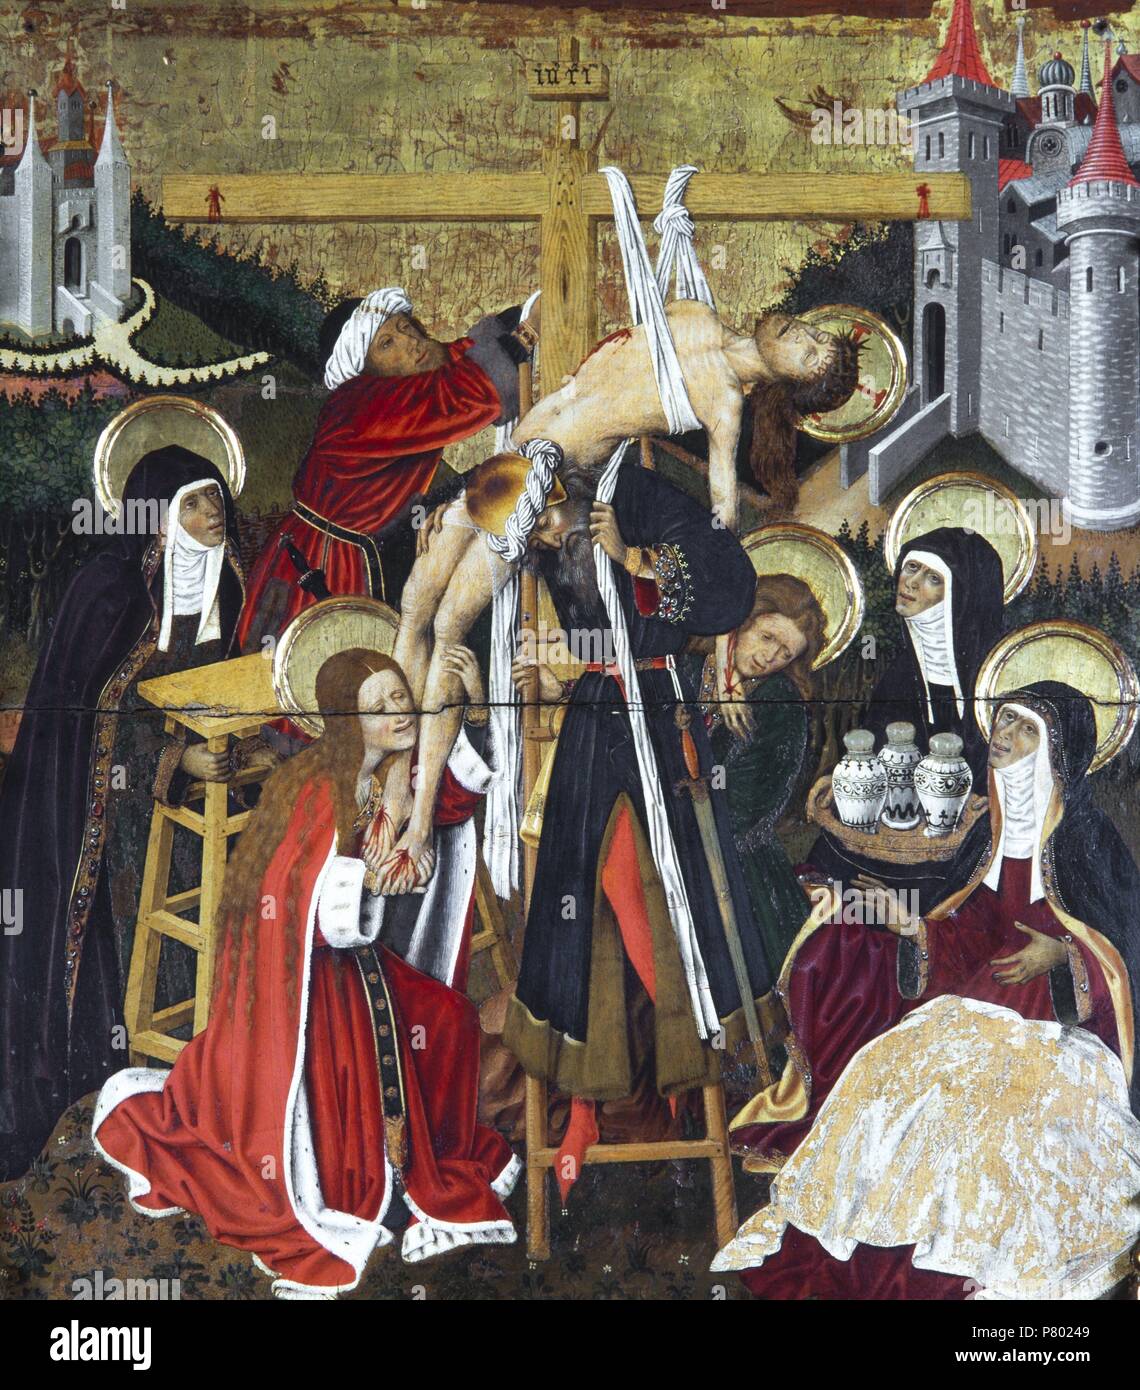 Retablo de la Transfiguración, 1445-1452. Descendimiento de la cruz. Pintura al temple sobre tabla. Catedral de Barcelona. Stock Photo